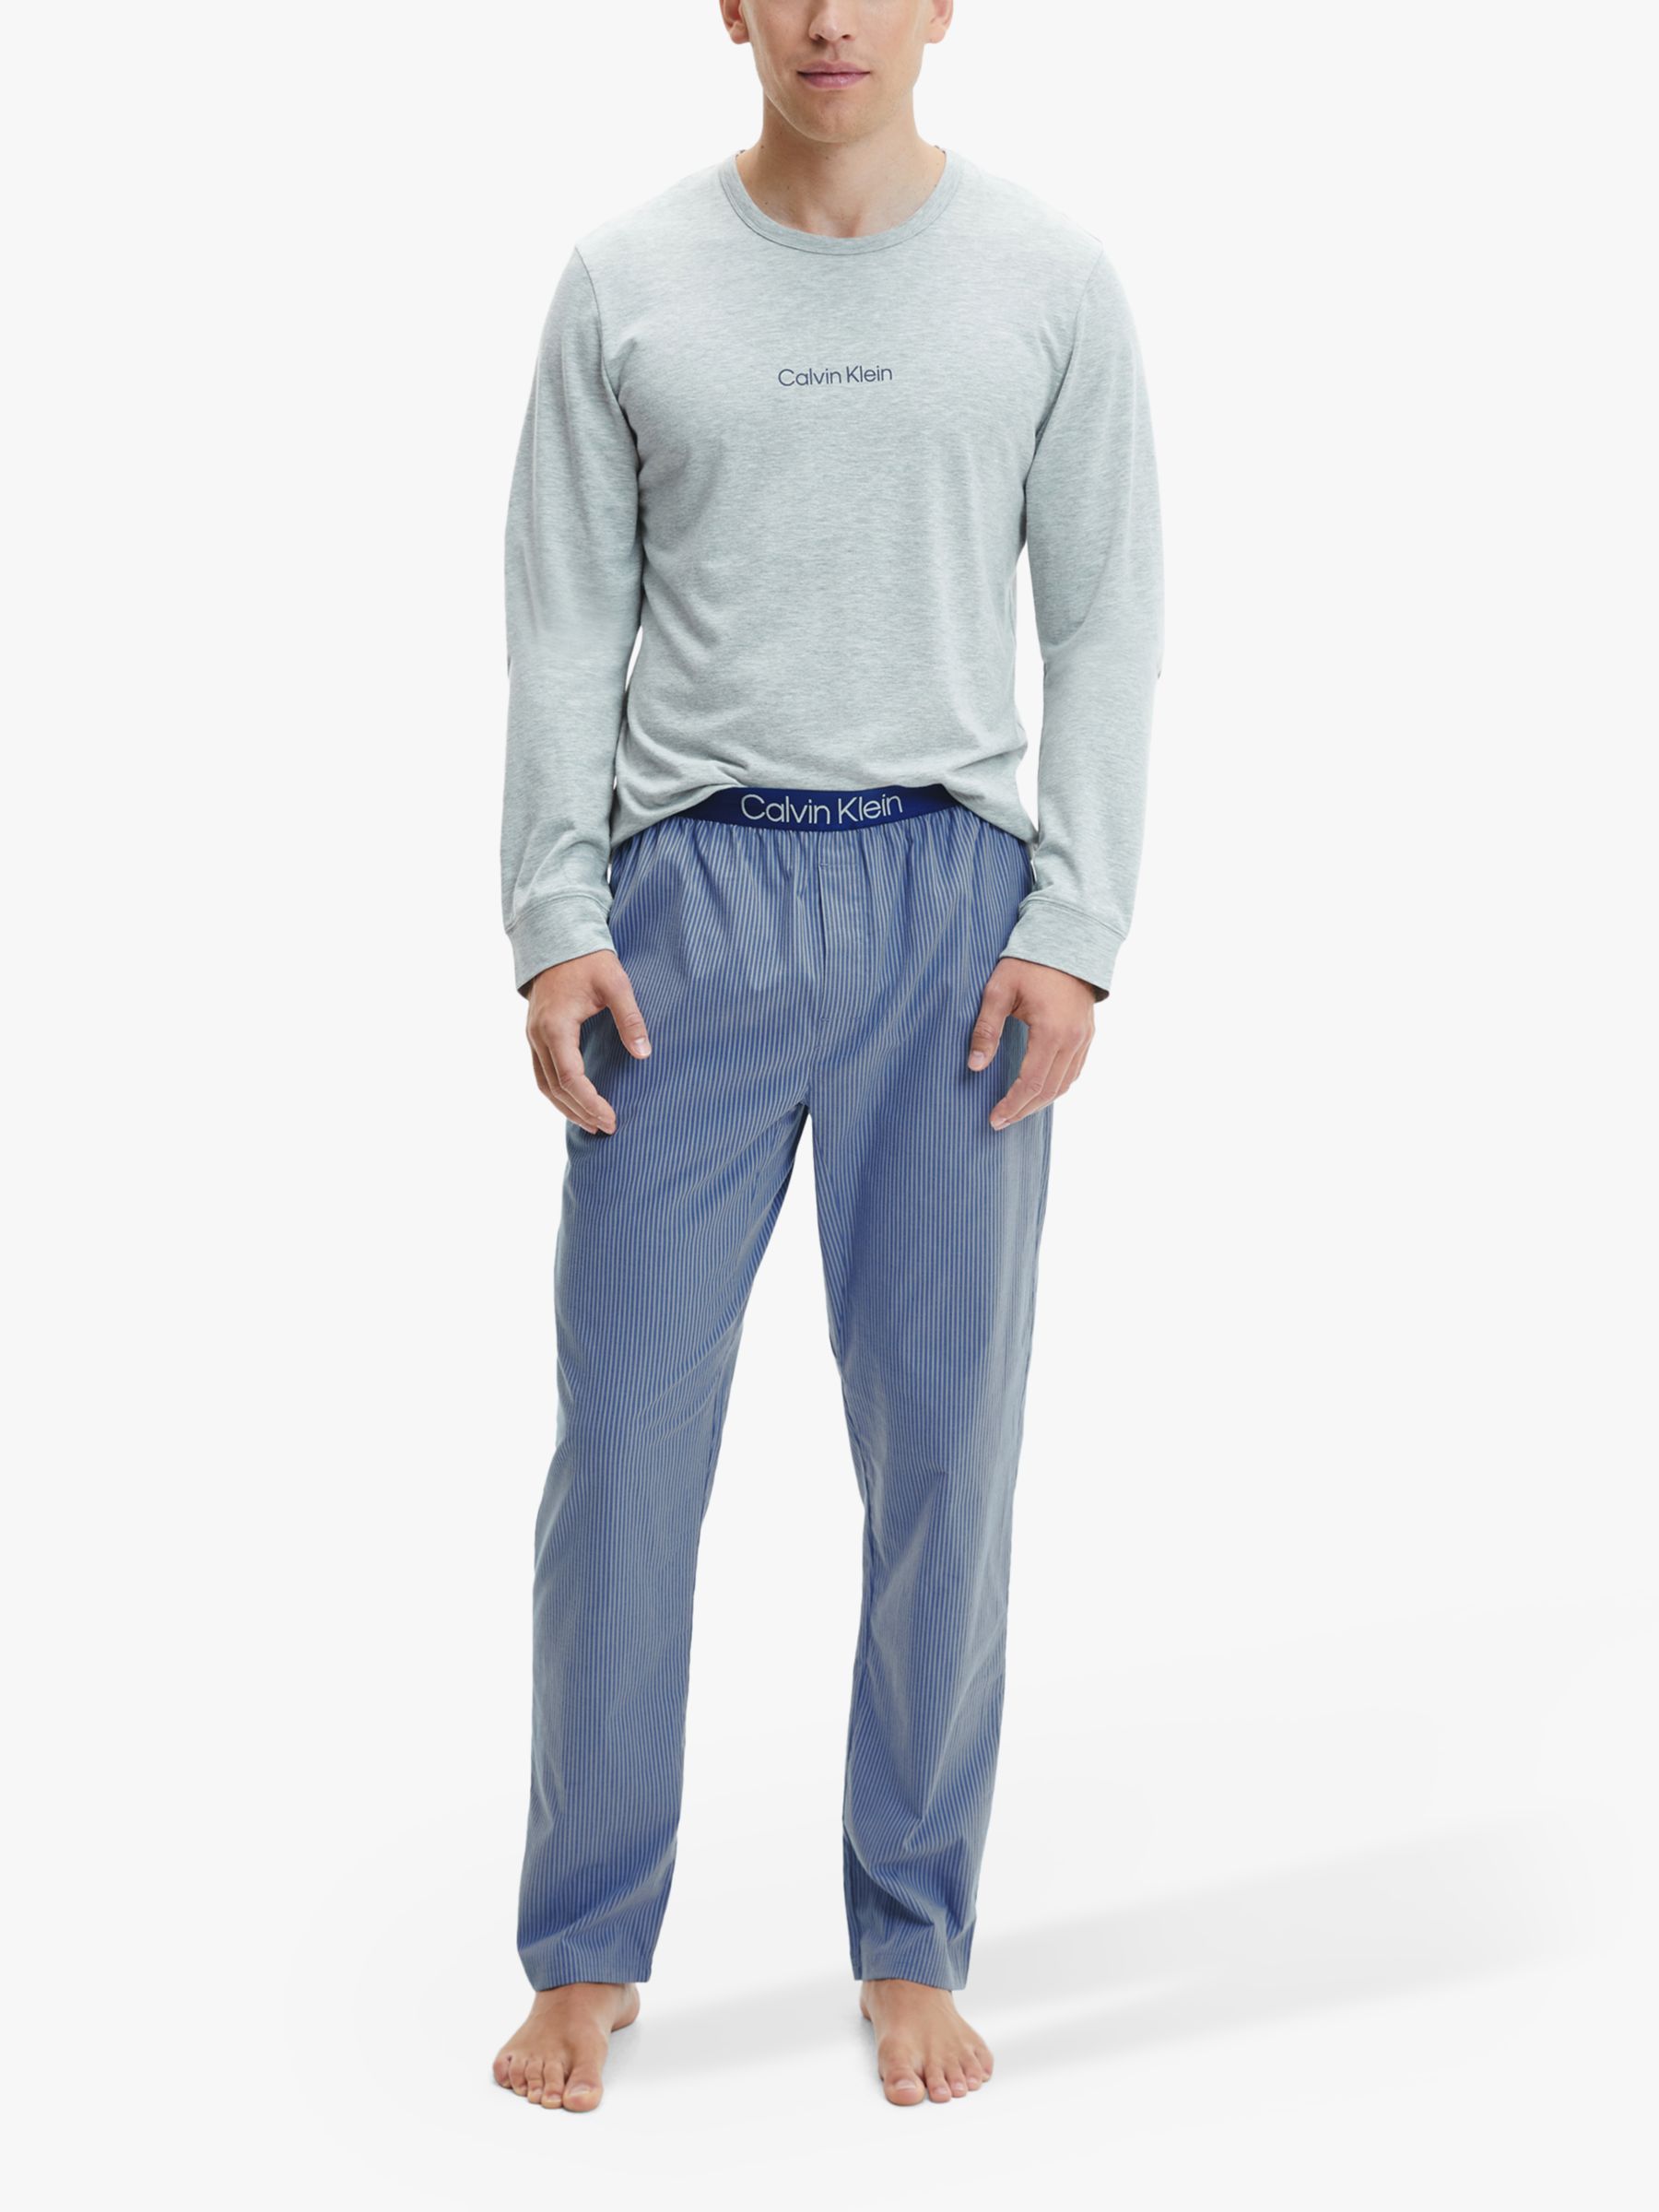 Wolk Karakteriseren Zee Calvin Klein Long Sleeve T-Shirt and Check Pyjama Set, Blue/Grey